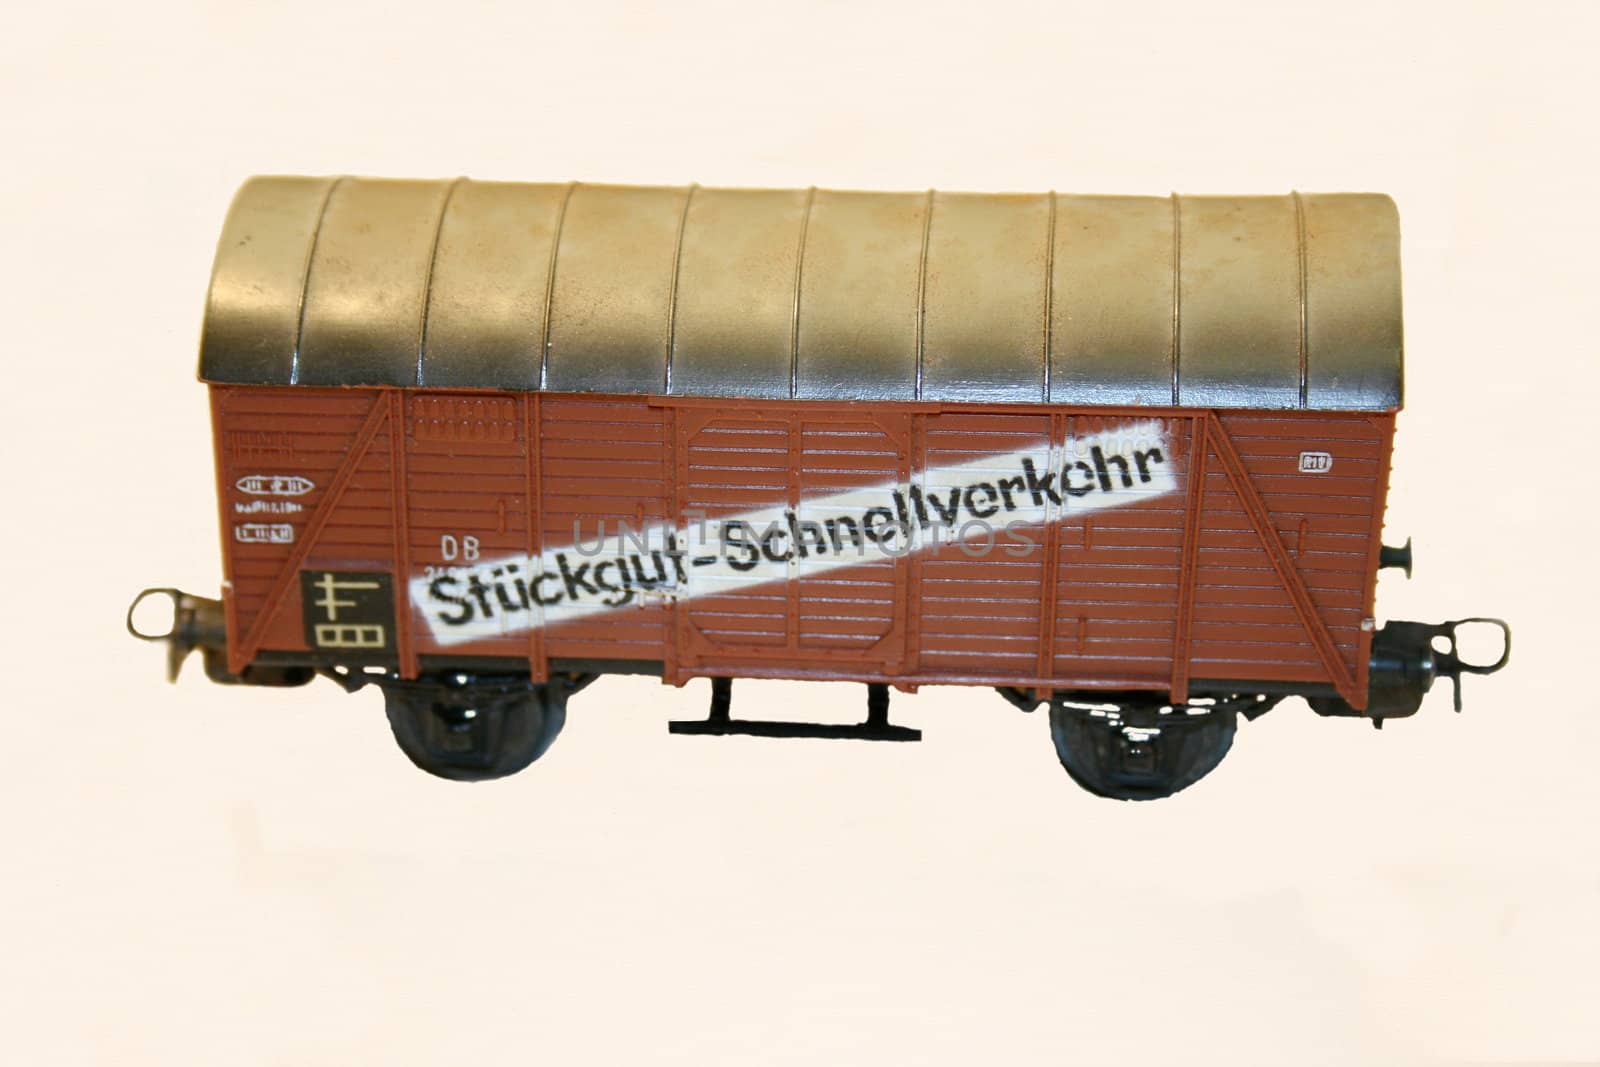 alter Güterwagon,einer Spielzeug Modelleisenbahn
old freight wagon, a toy model train